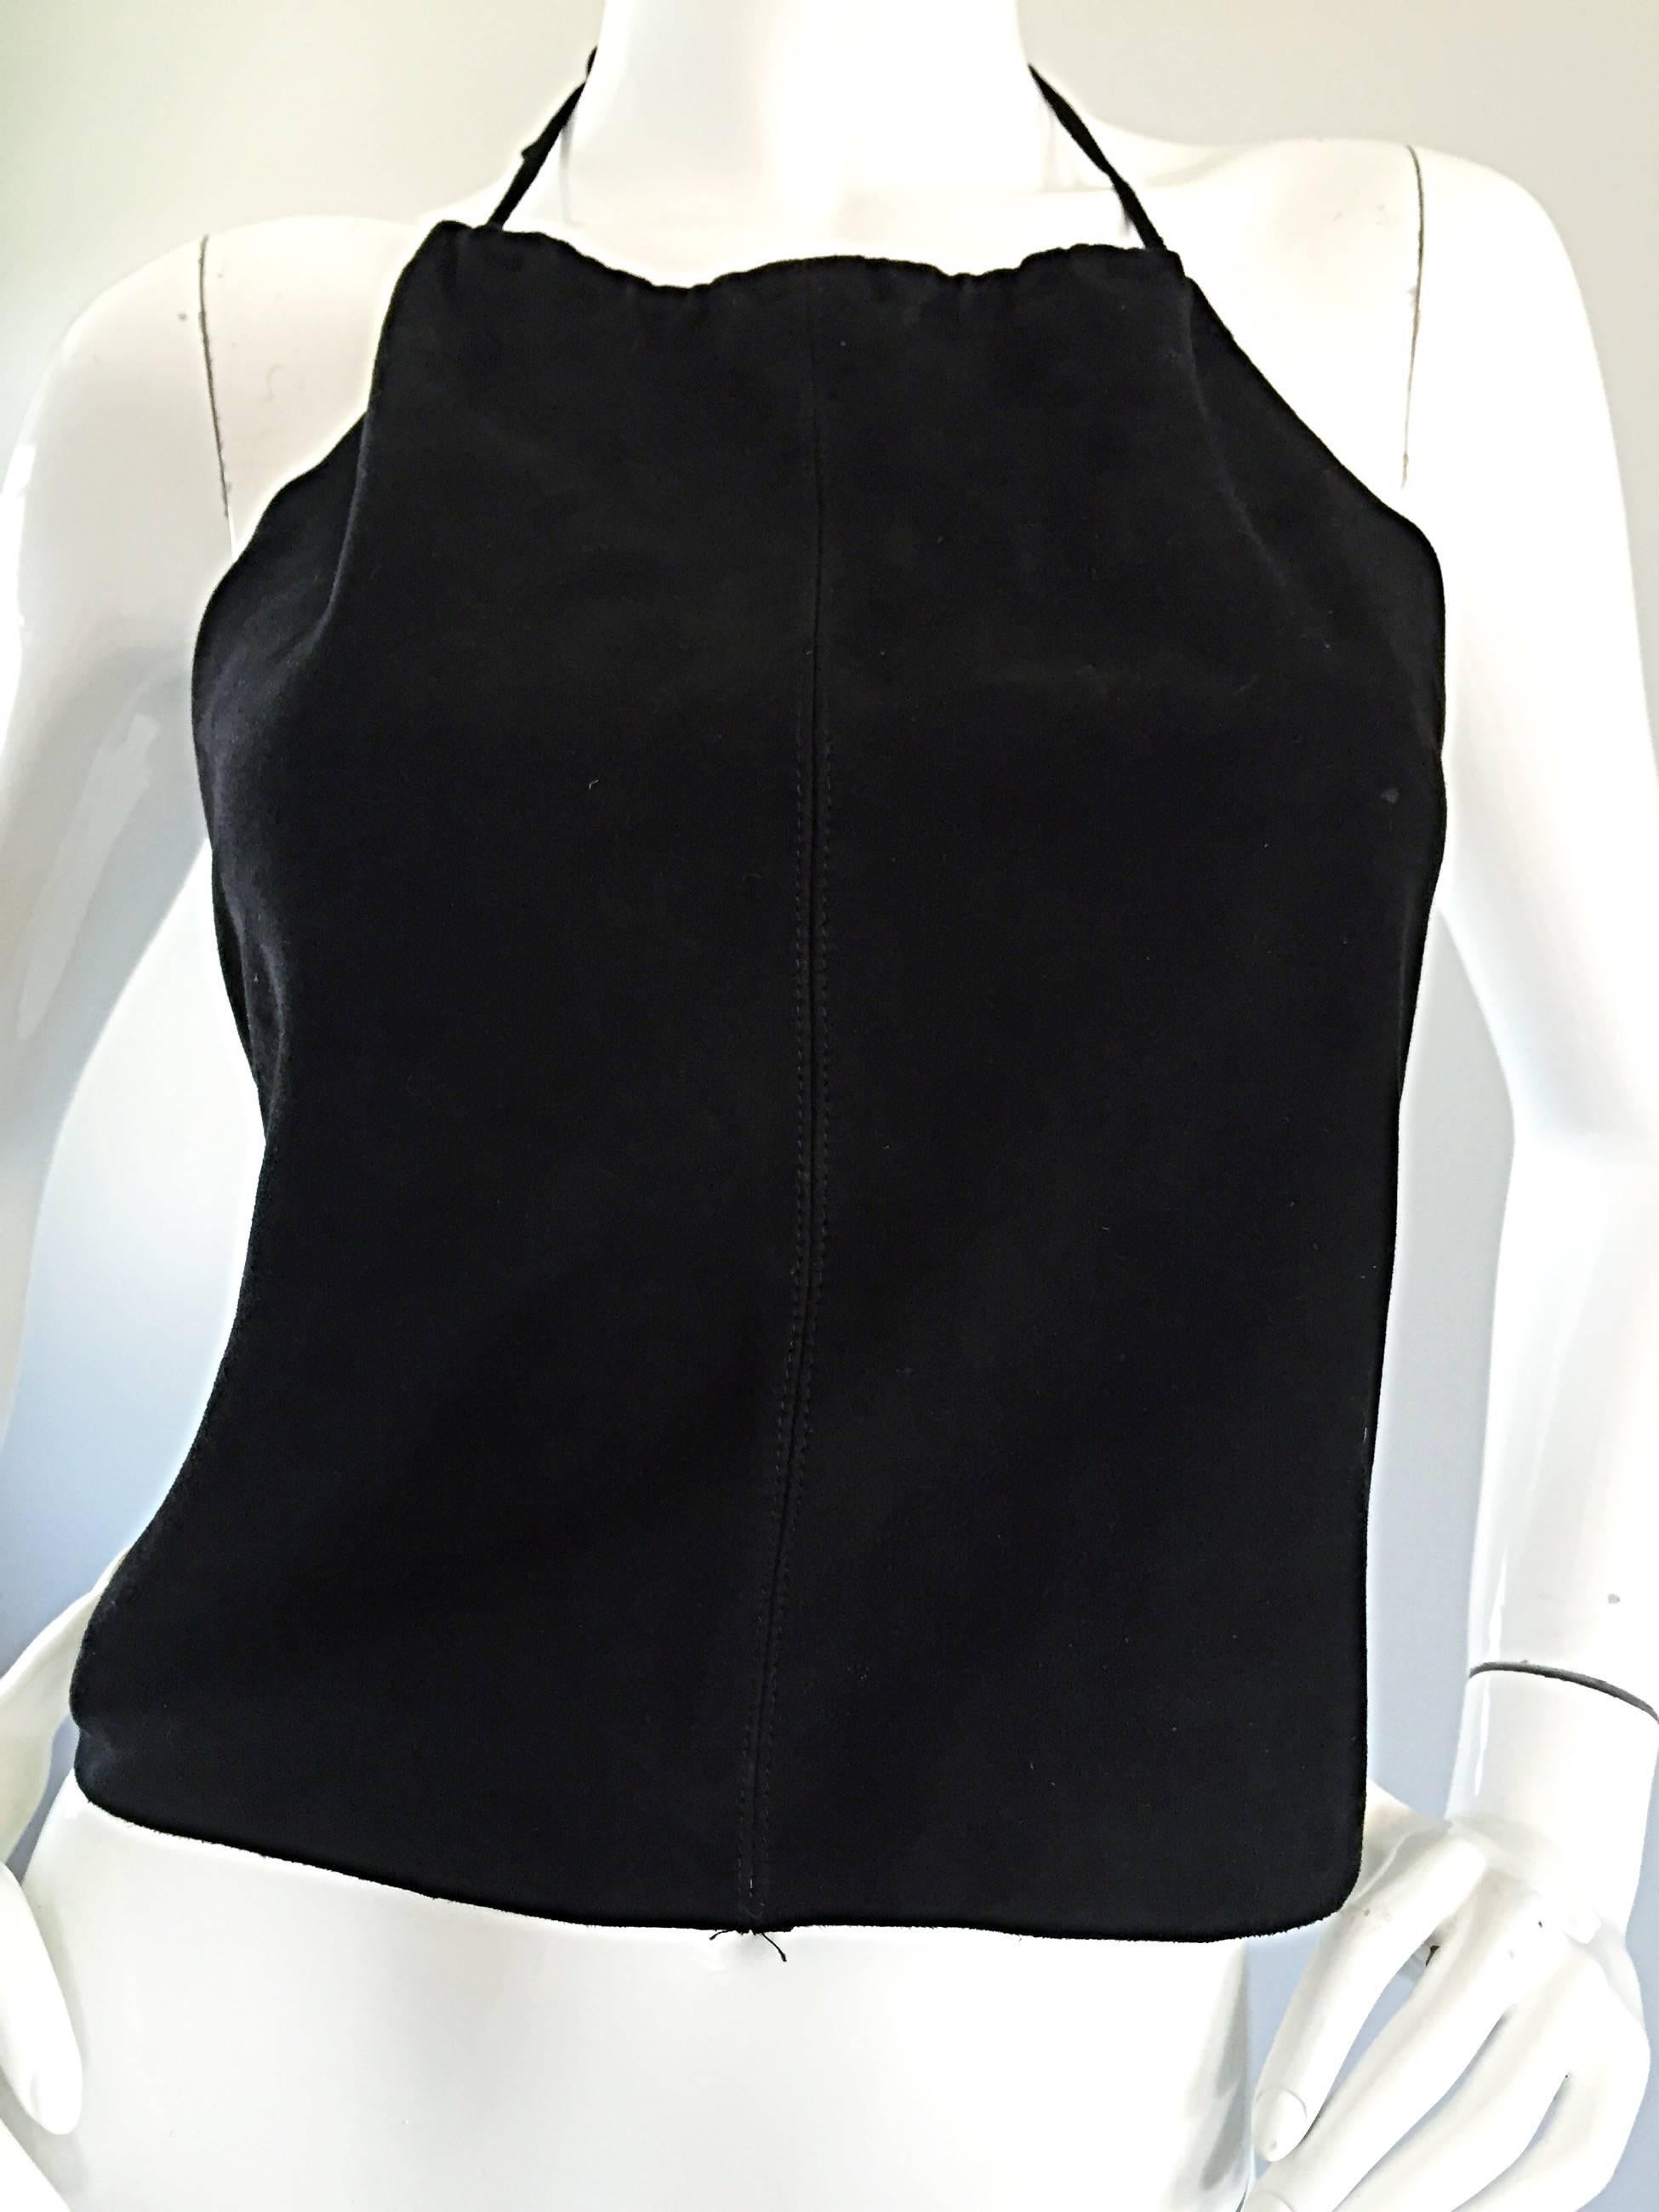 Gemma Kahng Vintage 1990s Black Suede Leather 90s Cropped Halter Top Shirt For Sale 1